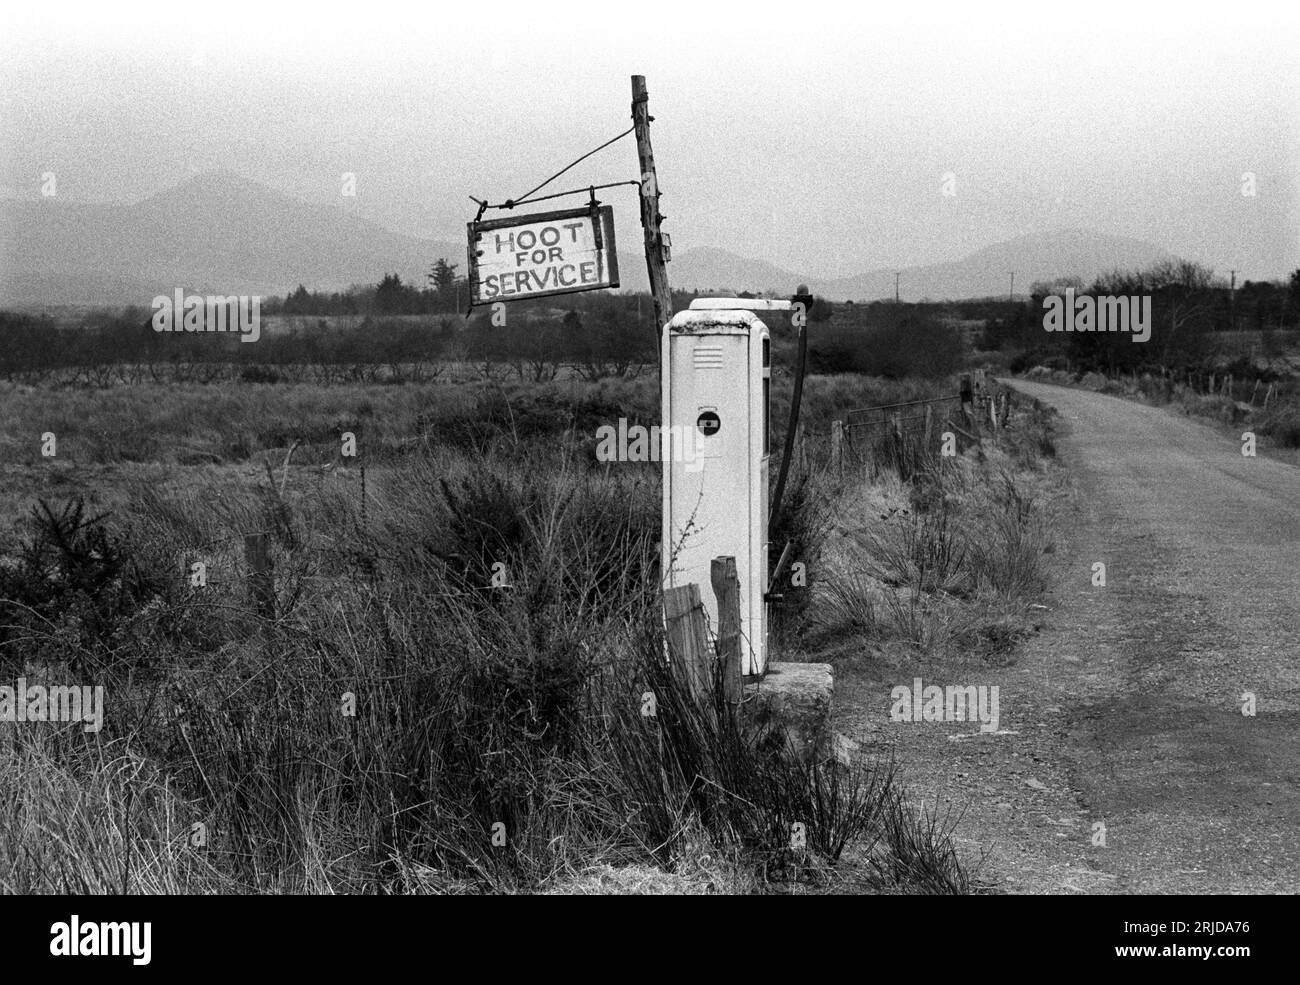 Cartello del distributore di benzina rurale in Countryside Hoot per Service 1970s Eire. L'agricoltore che gestisce il distributore di benzina ascoltando il clacson dell'auto è sceso dal cottage a due o trecento metri di distanza per riempire l'auto. Contea di Kerry, Eire, circa 1972. HOMER SYKES Foto Stock